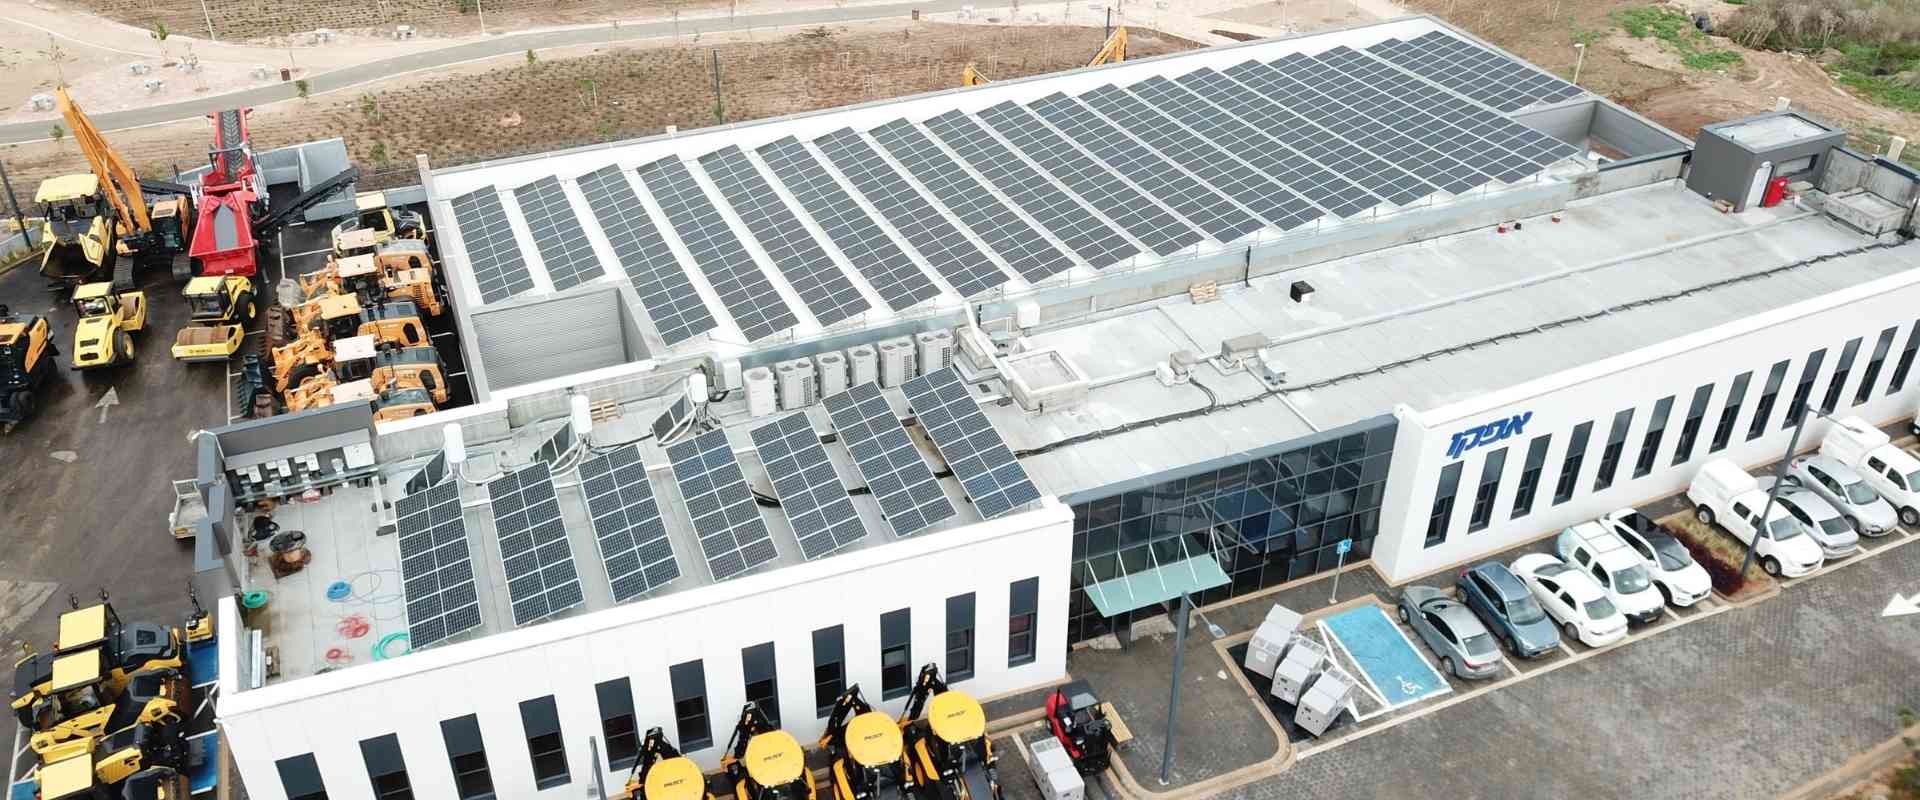 מערכת סולארית עסקית על גגות מפעלים